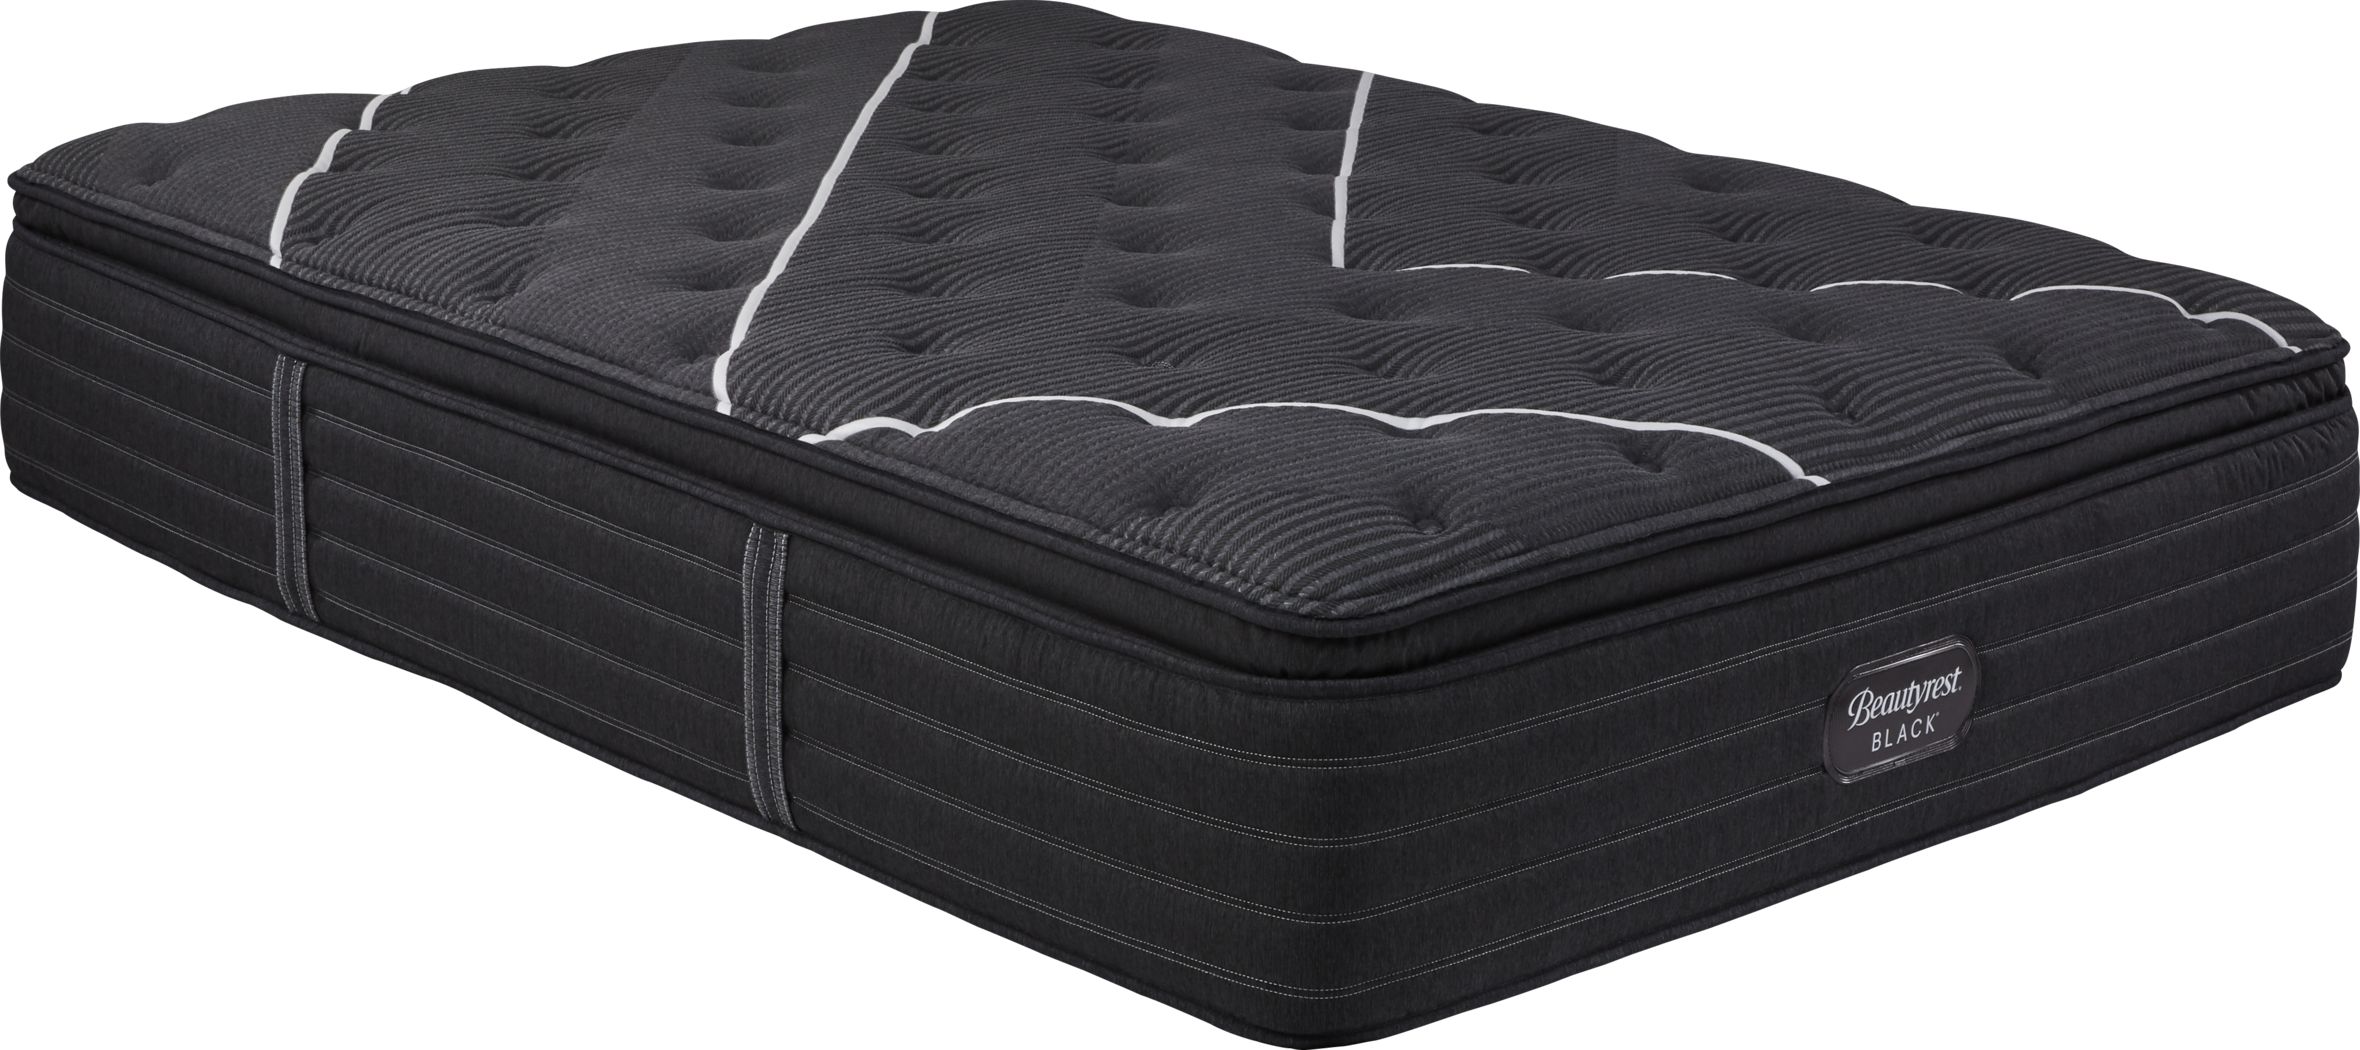 beautyrest recharge ultra plush pillowtop king mattress